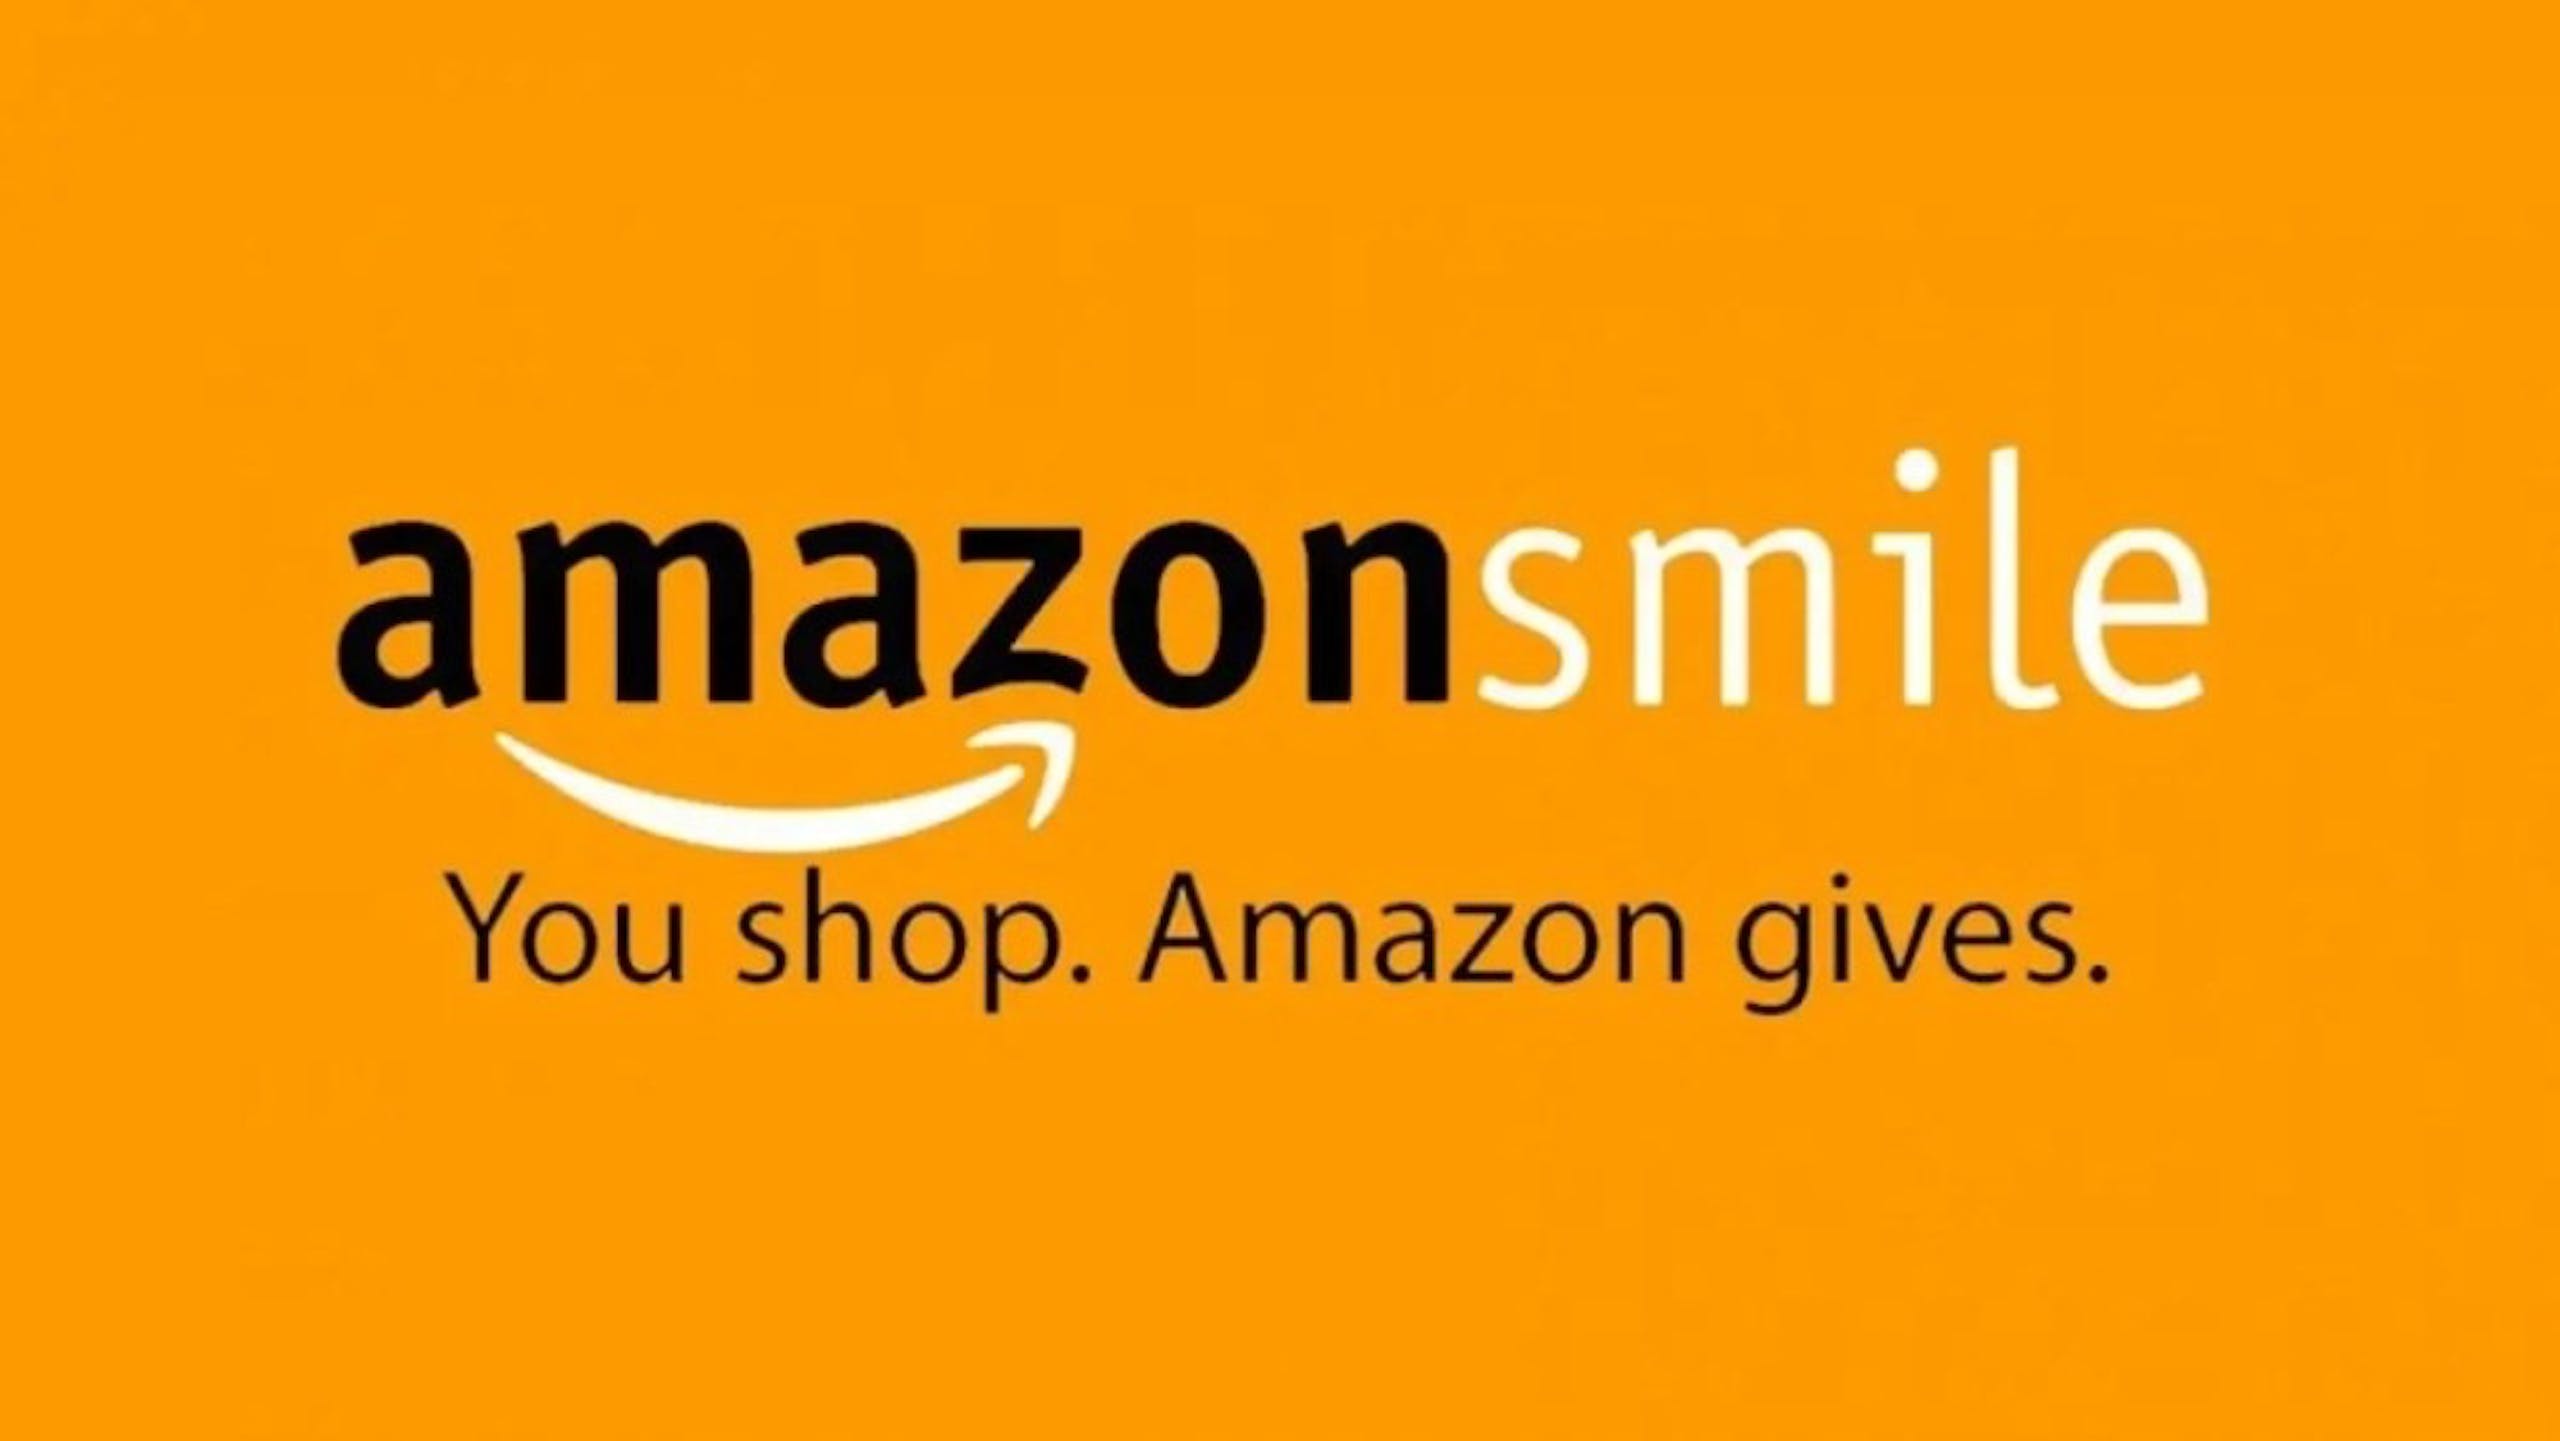 照片中提到了amazonsmile、You shop. Amazon gives.，跟亞馬孫有關，包含了亞馬遜微笑、亞馬遜網、慈善組織、亞馬遜中心櫃檯、購物